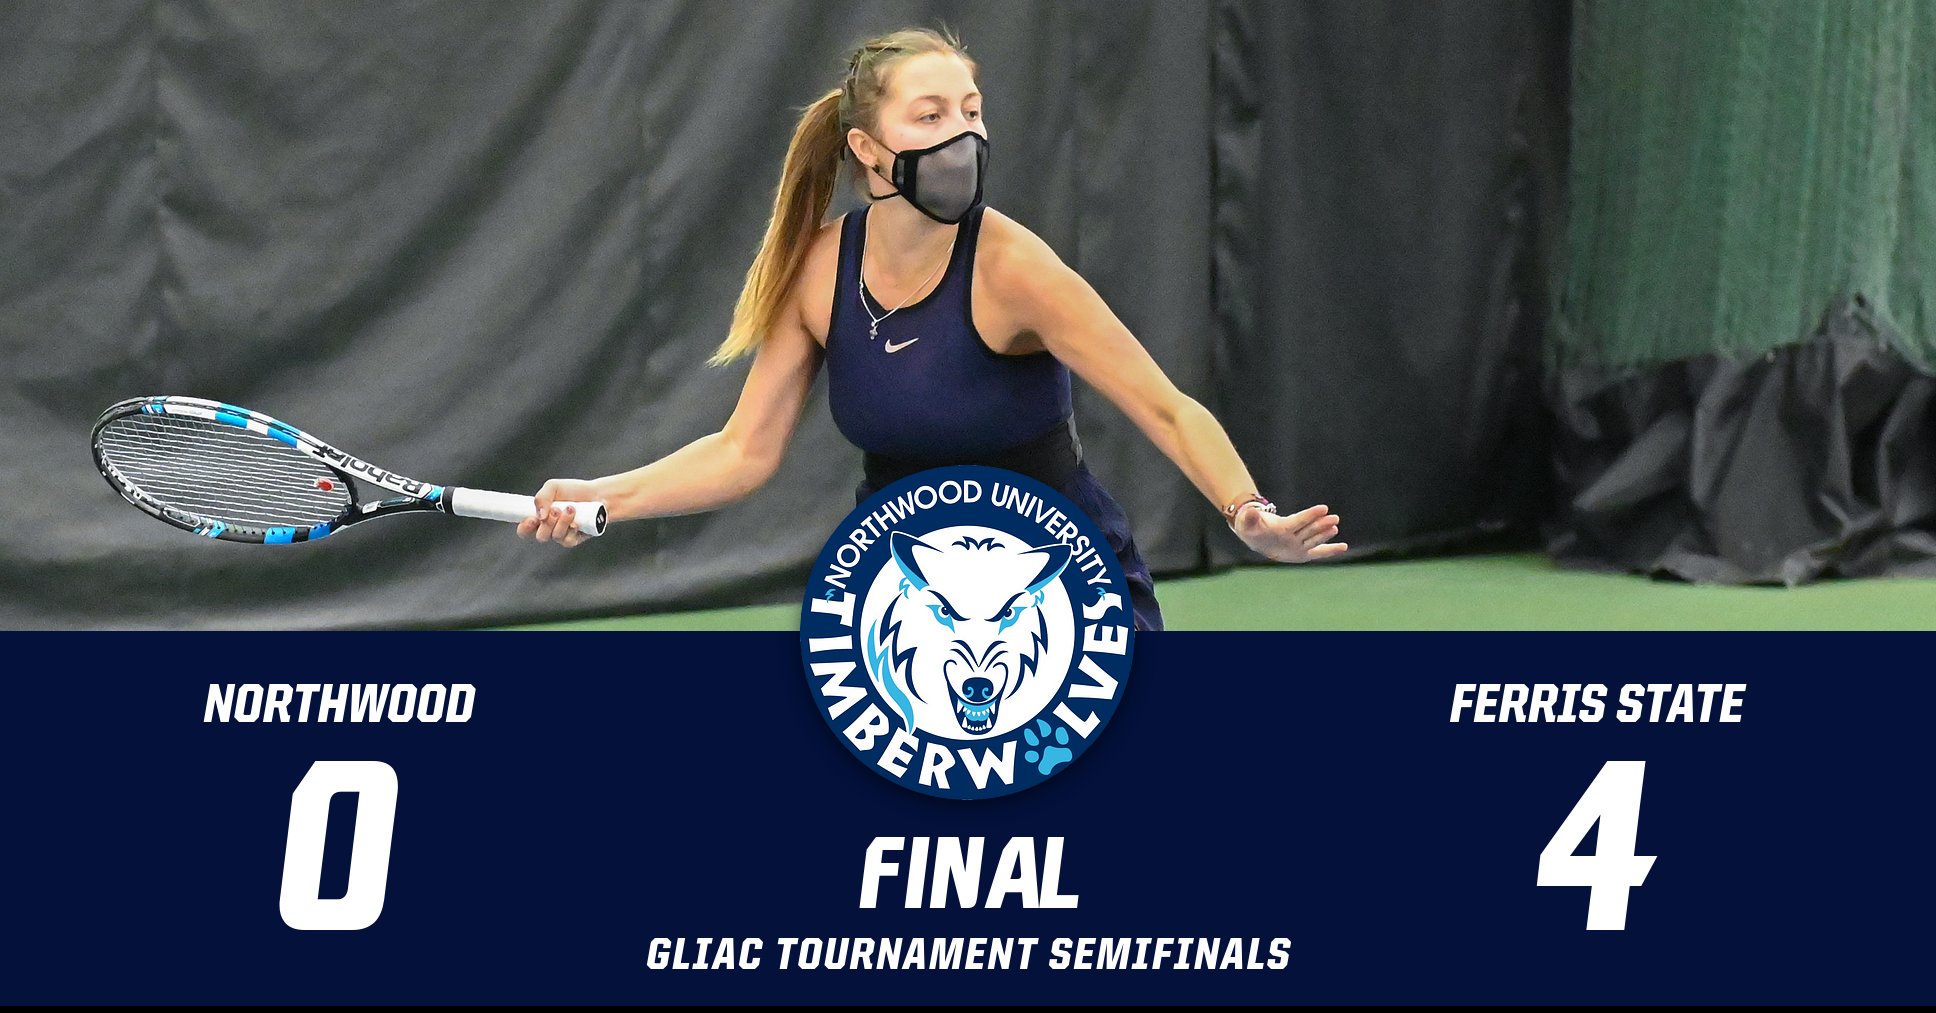 Women's Tennis Loses To Ferris State 4-0 In GLIAC Semifinals